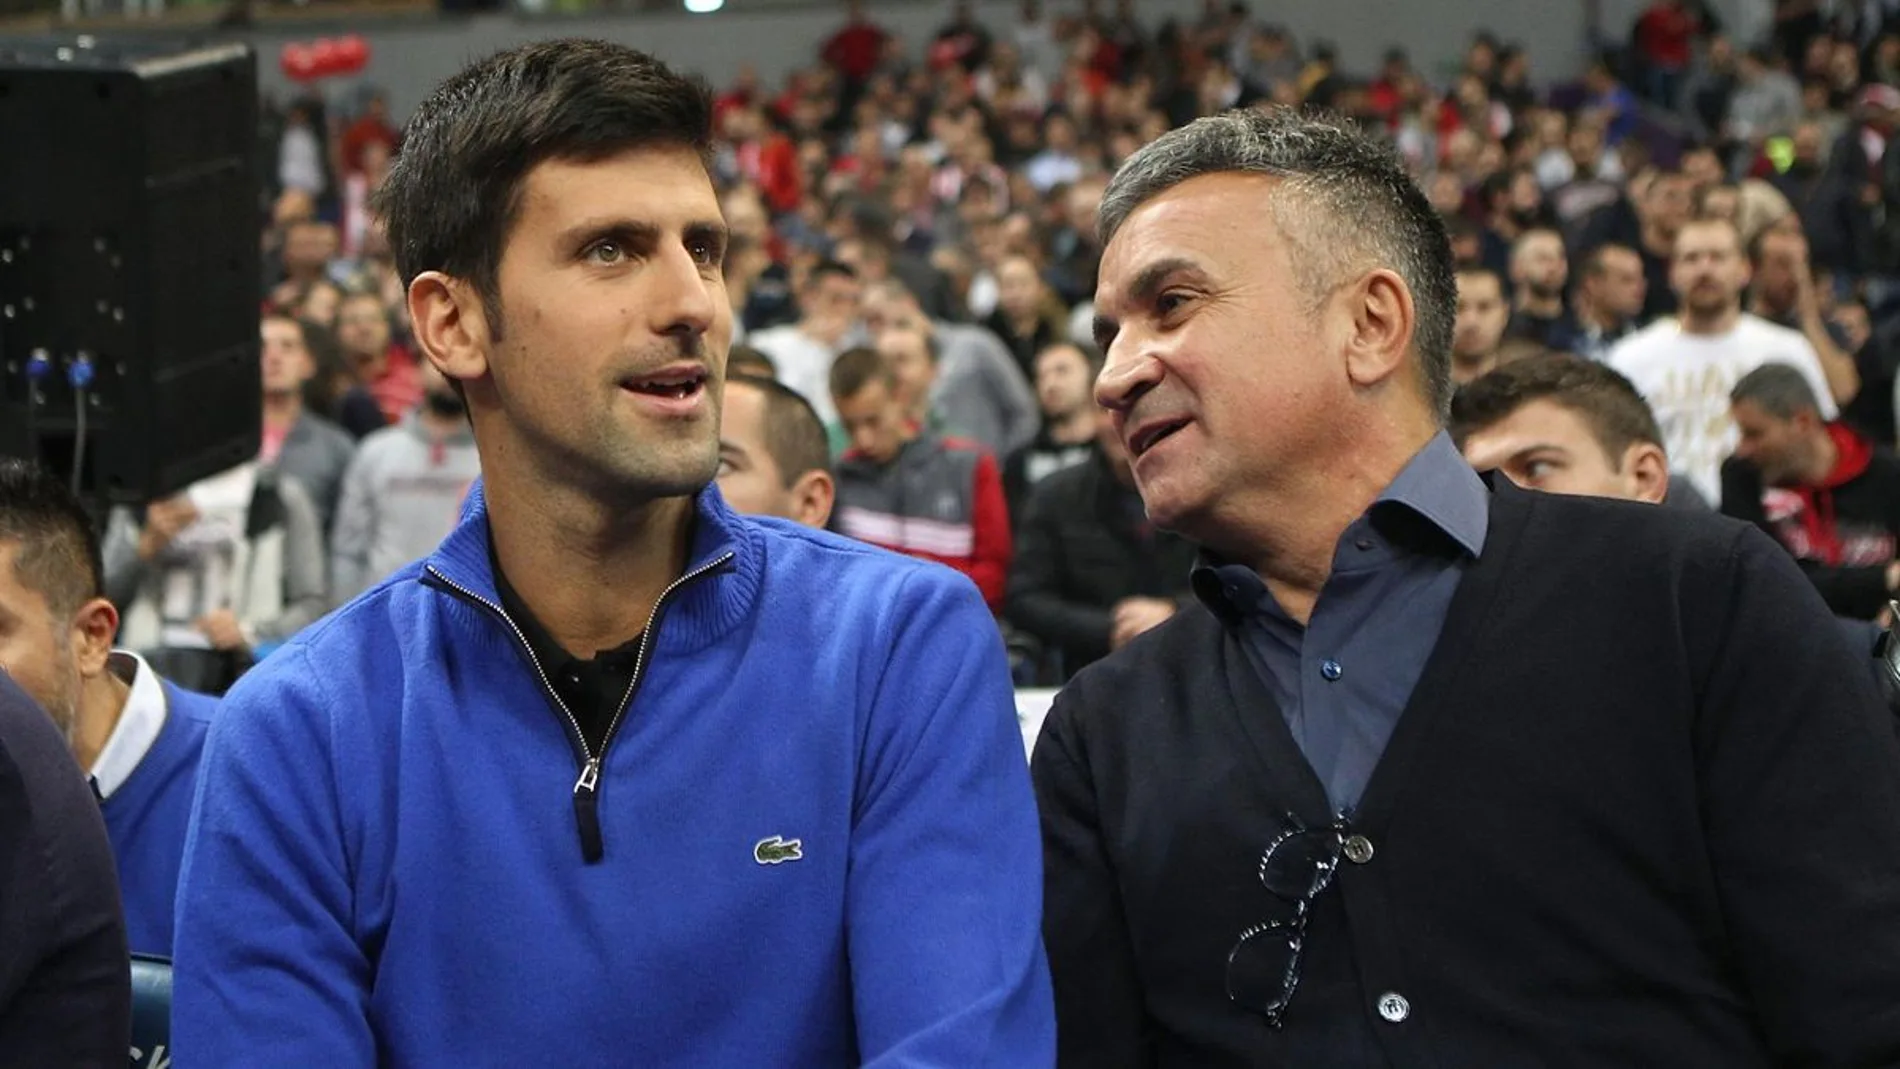 Novak Djokovic junto a su padre, Srdjan